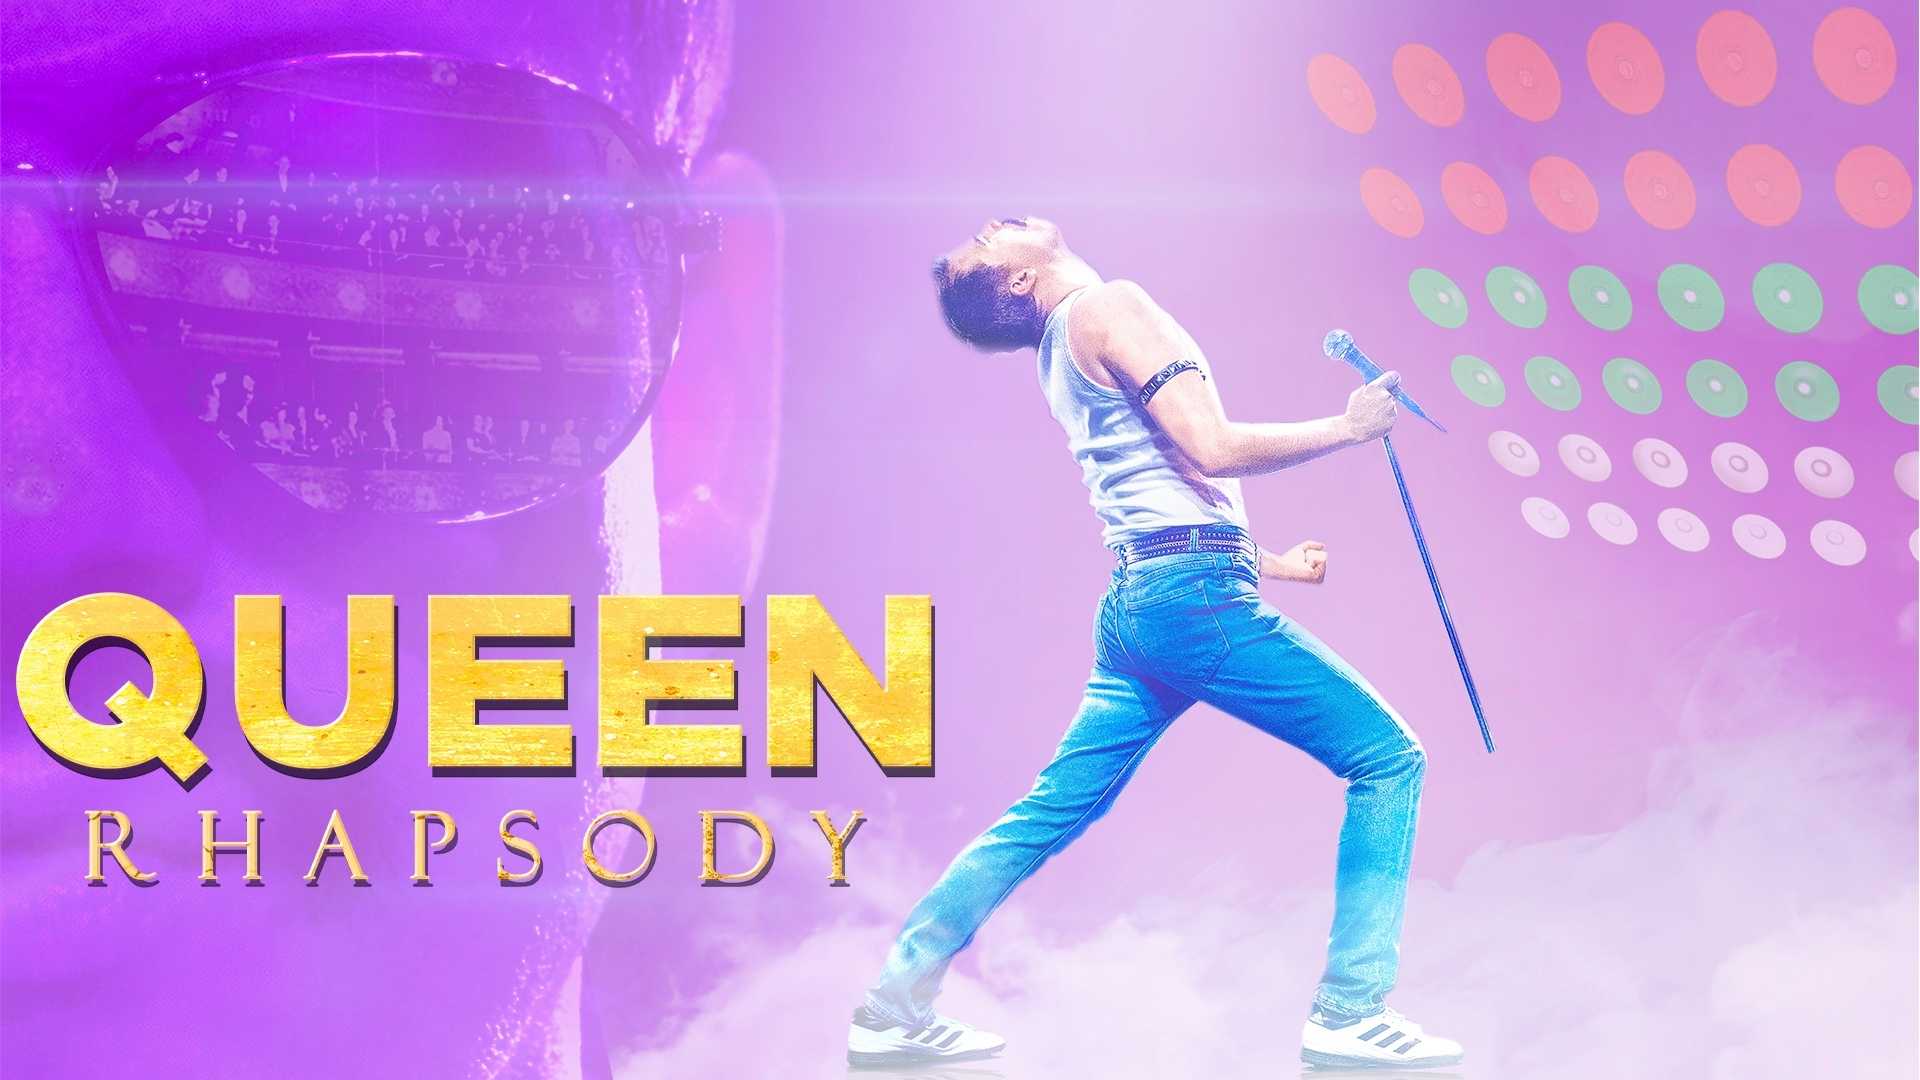 Queen Rhapsody on 19/06/2022